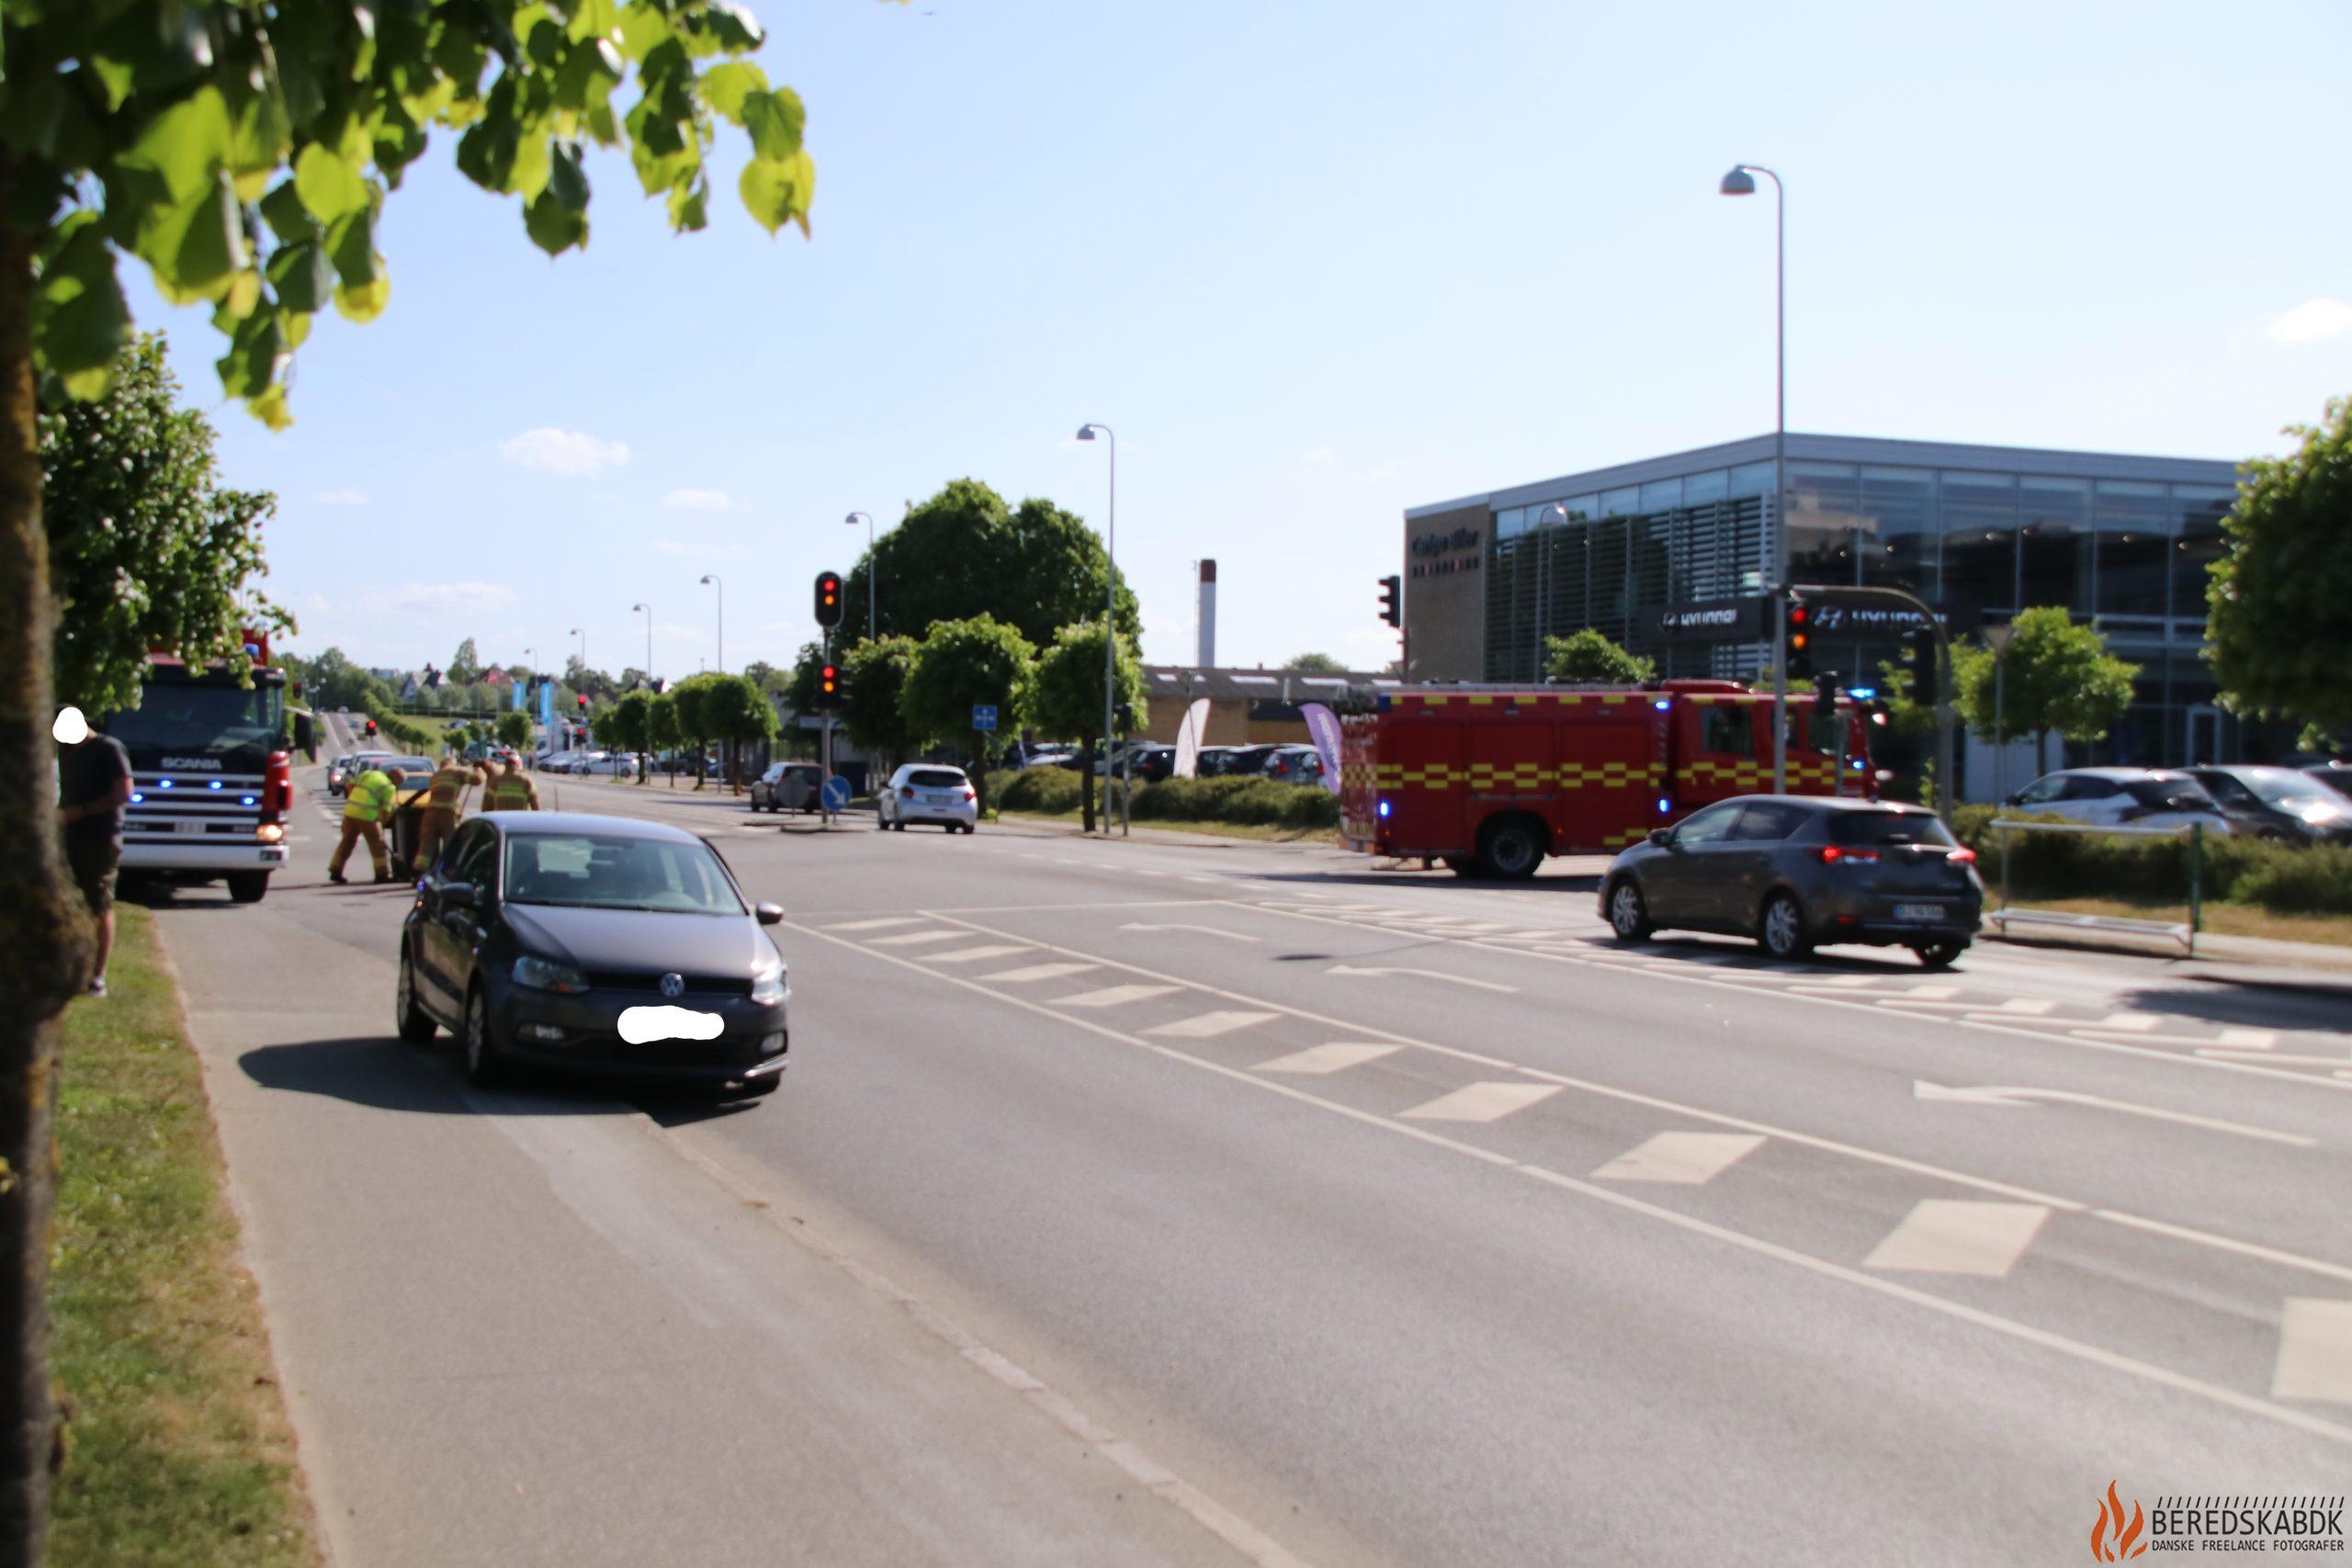 28/05-23 færdselsuheld i lyskrydset ved Endelavevej, Horsens